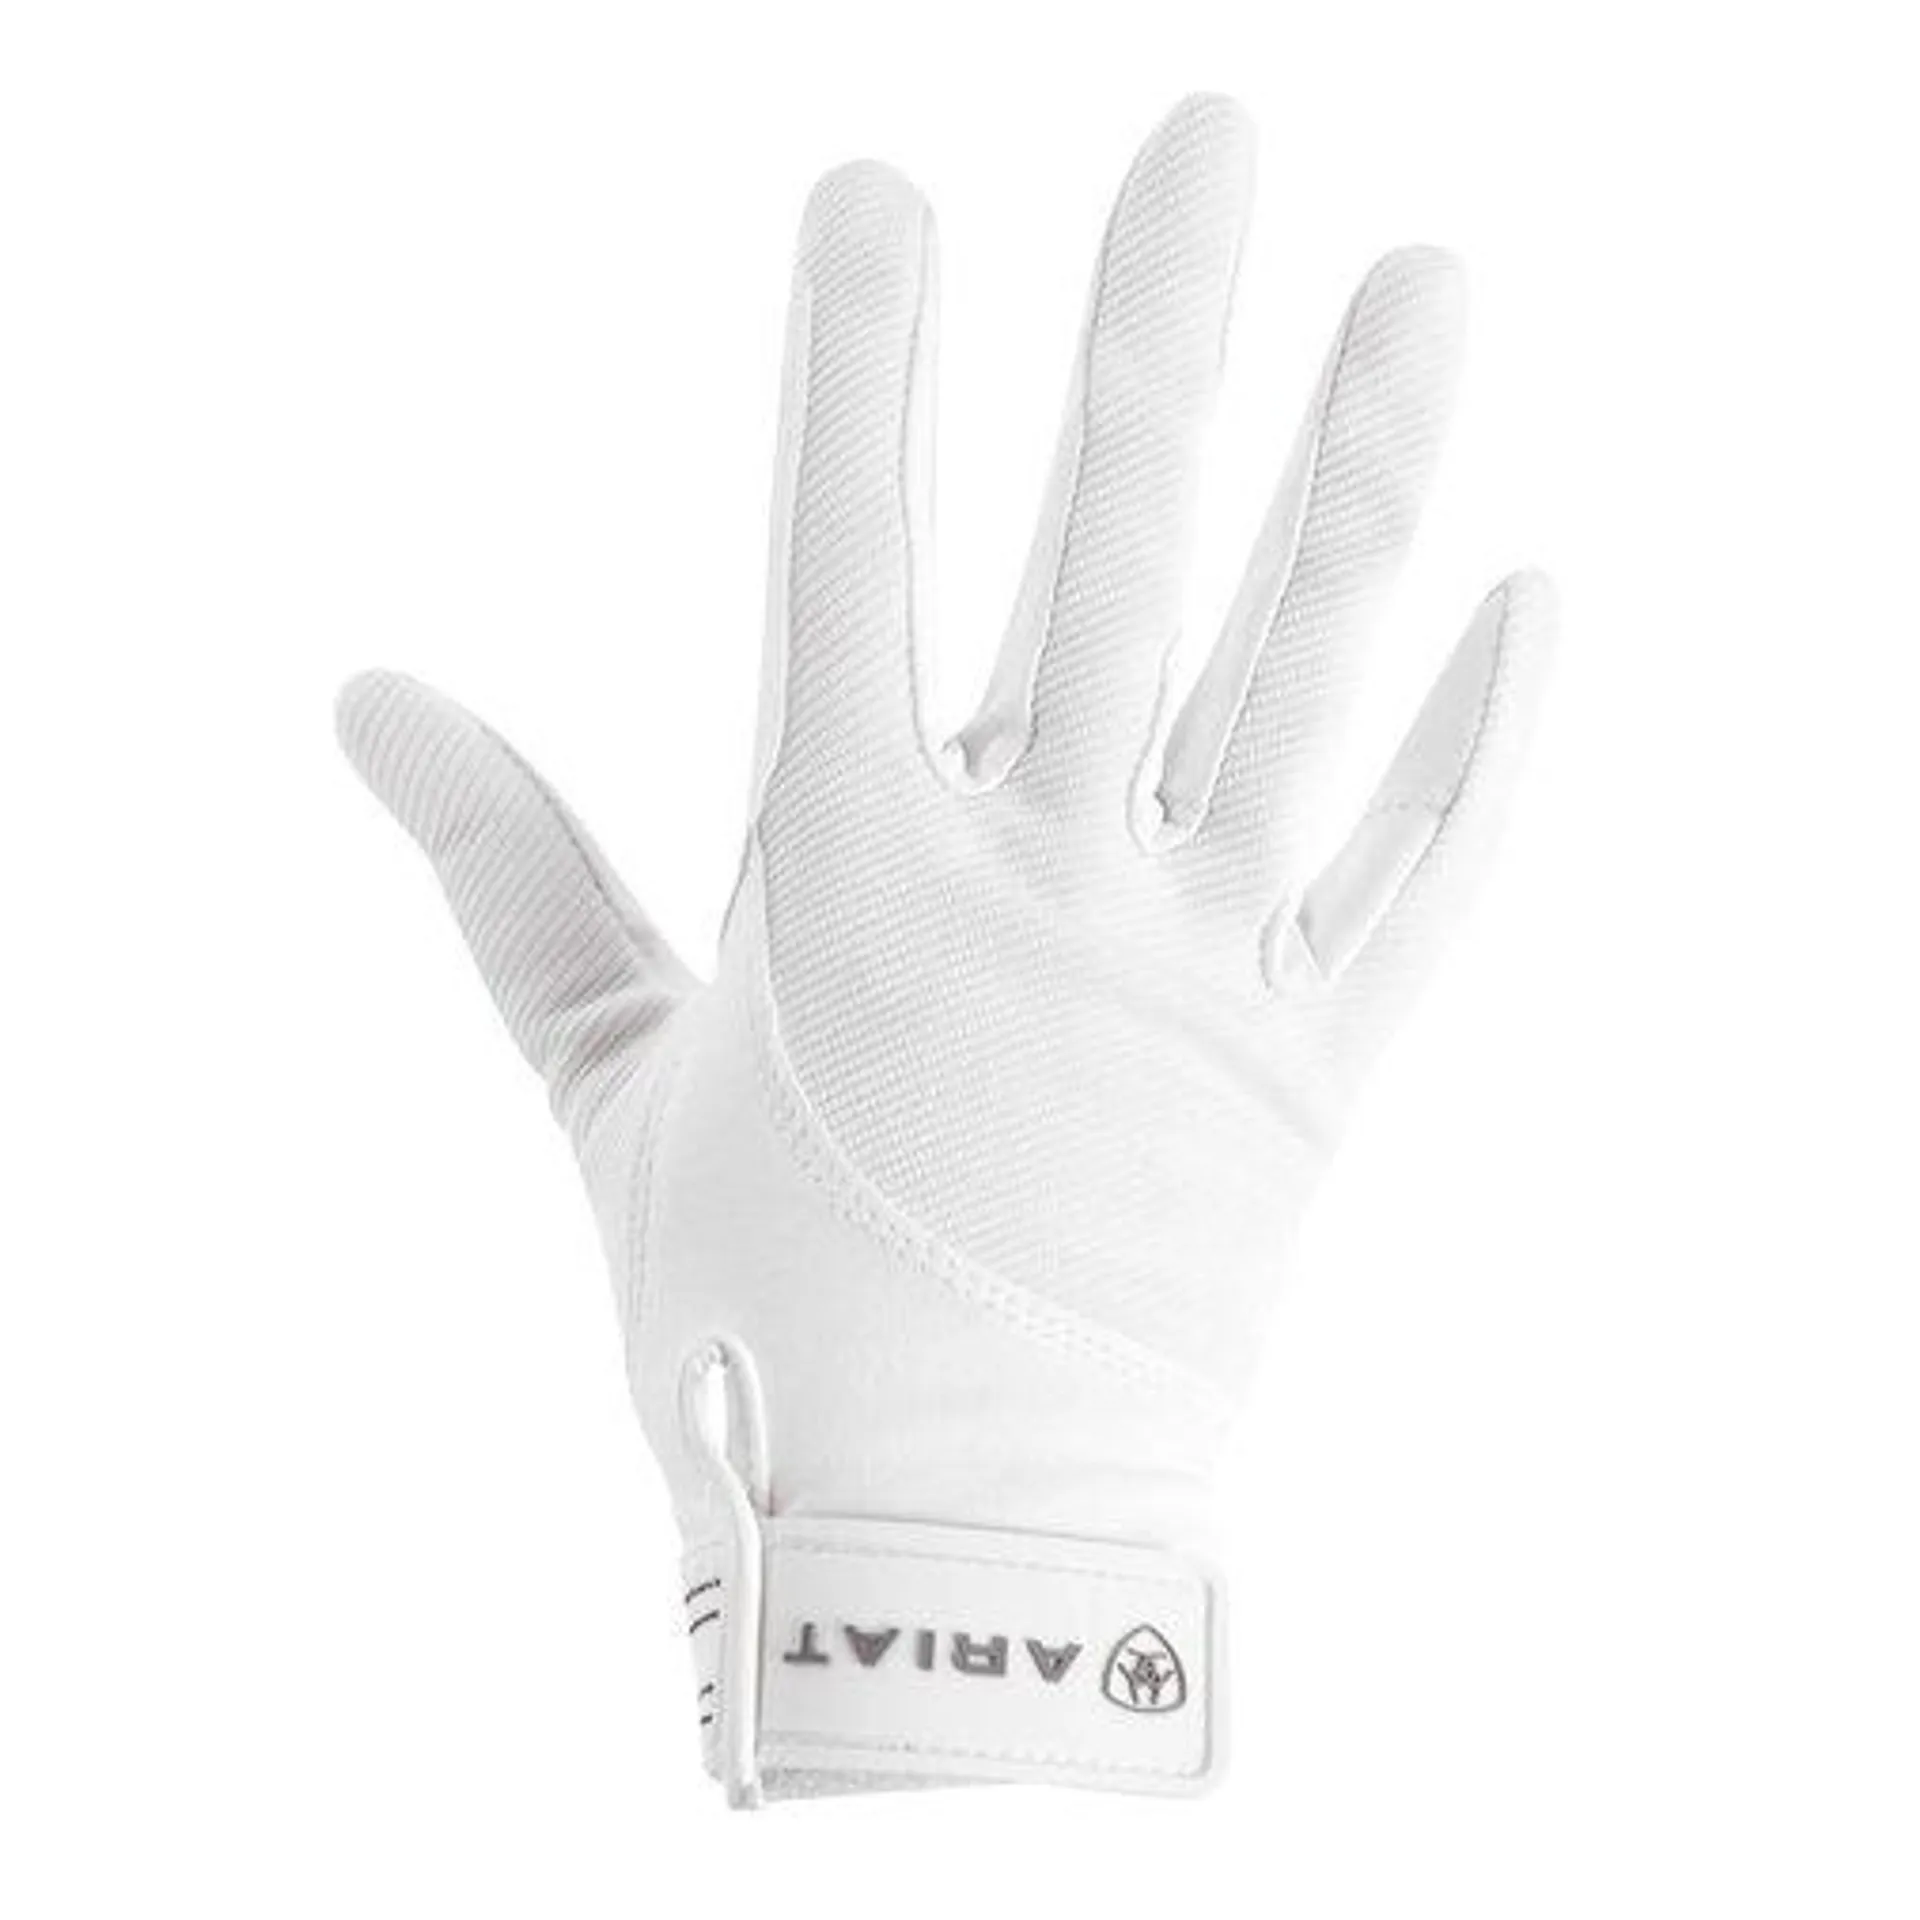 Ariat Tek Grip Gloves